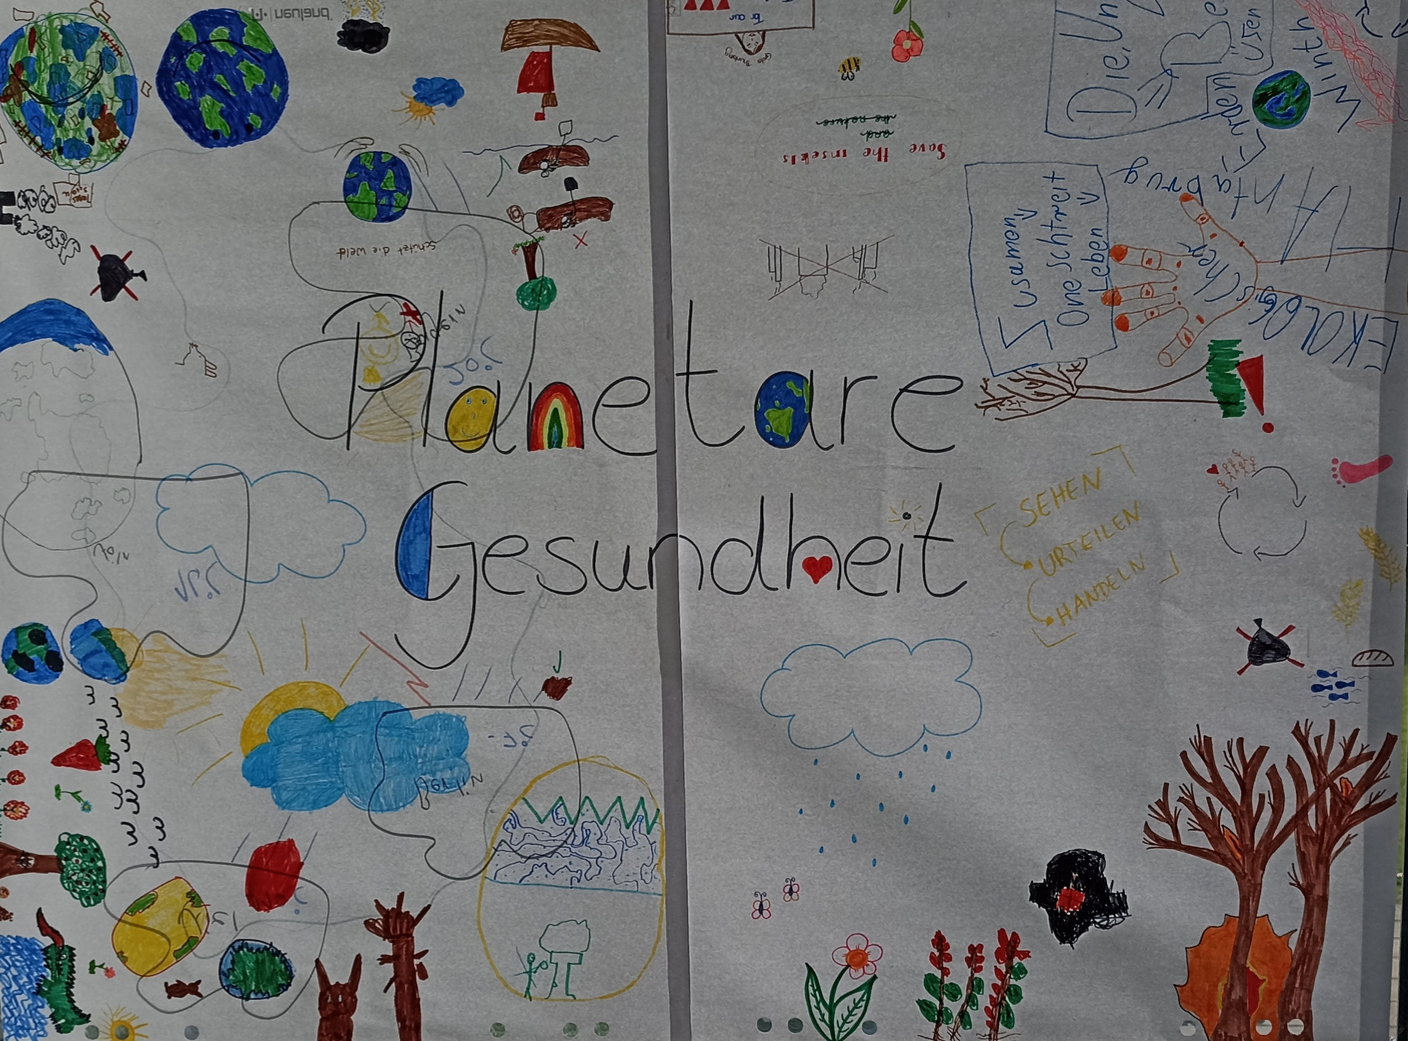 Planetare Gesundheit: von Kindern erstellt (c) KAB